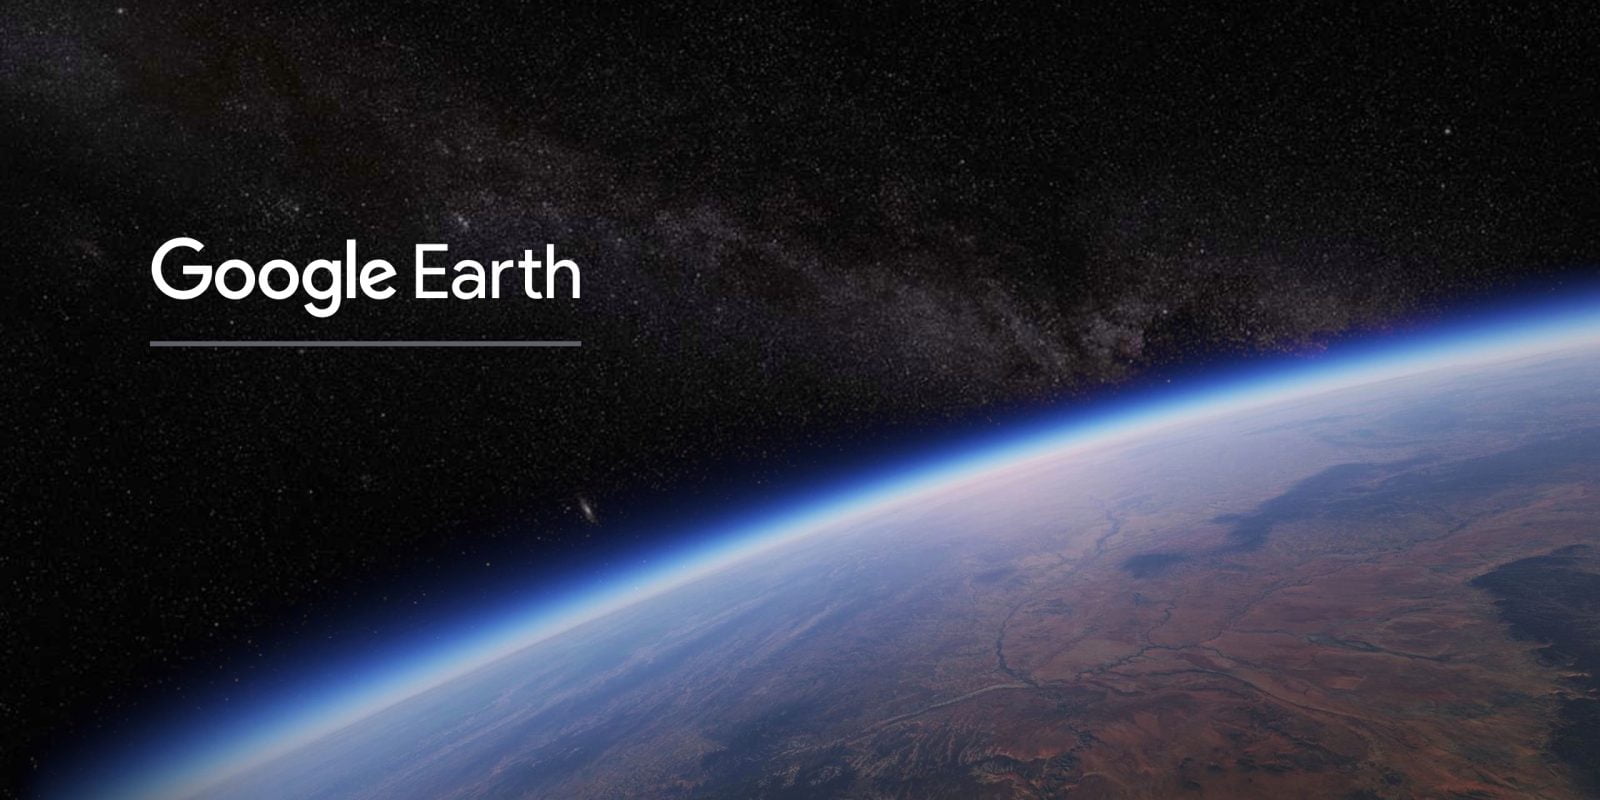 गुगल अर्थले हाम्रो ग्रह ३७ बर्षमा कति परिवर्तन भयो भनेर देखाउने